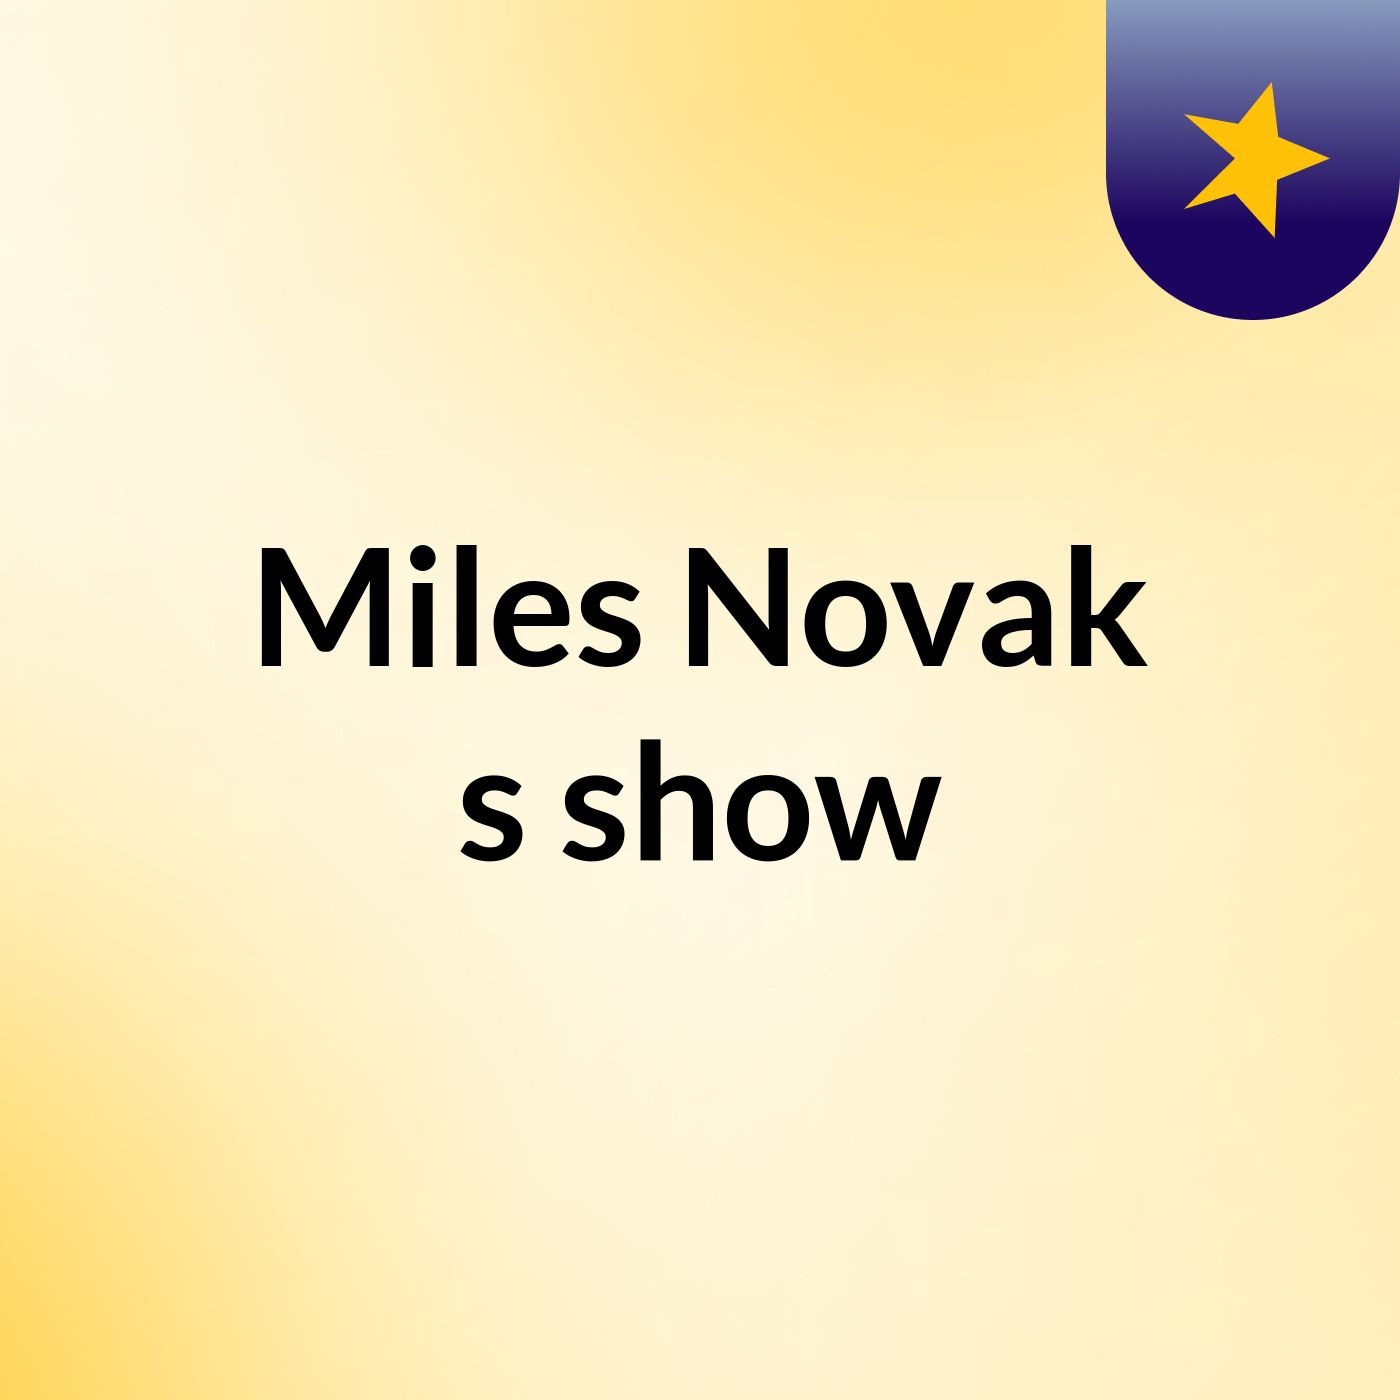 Miles Novak's show